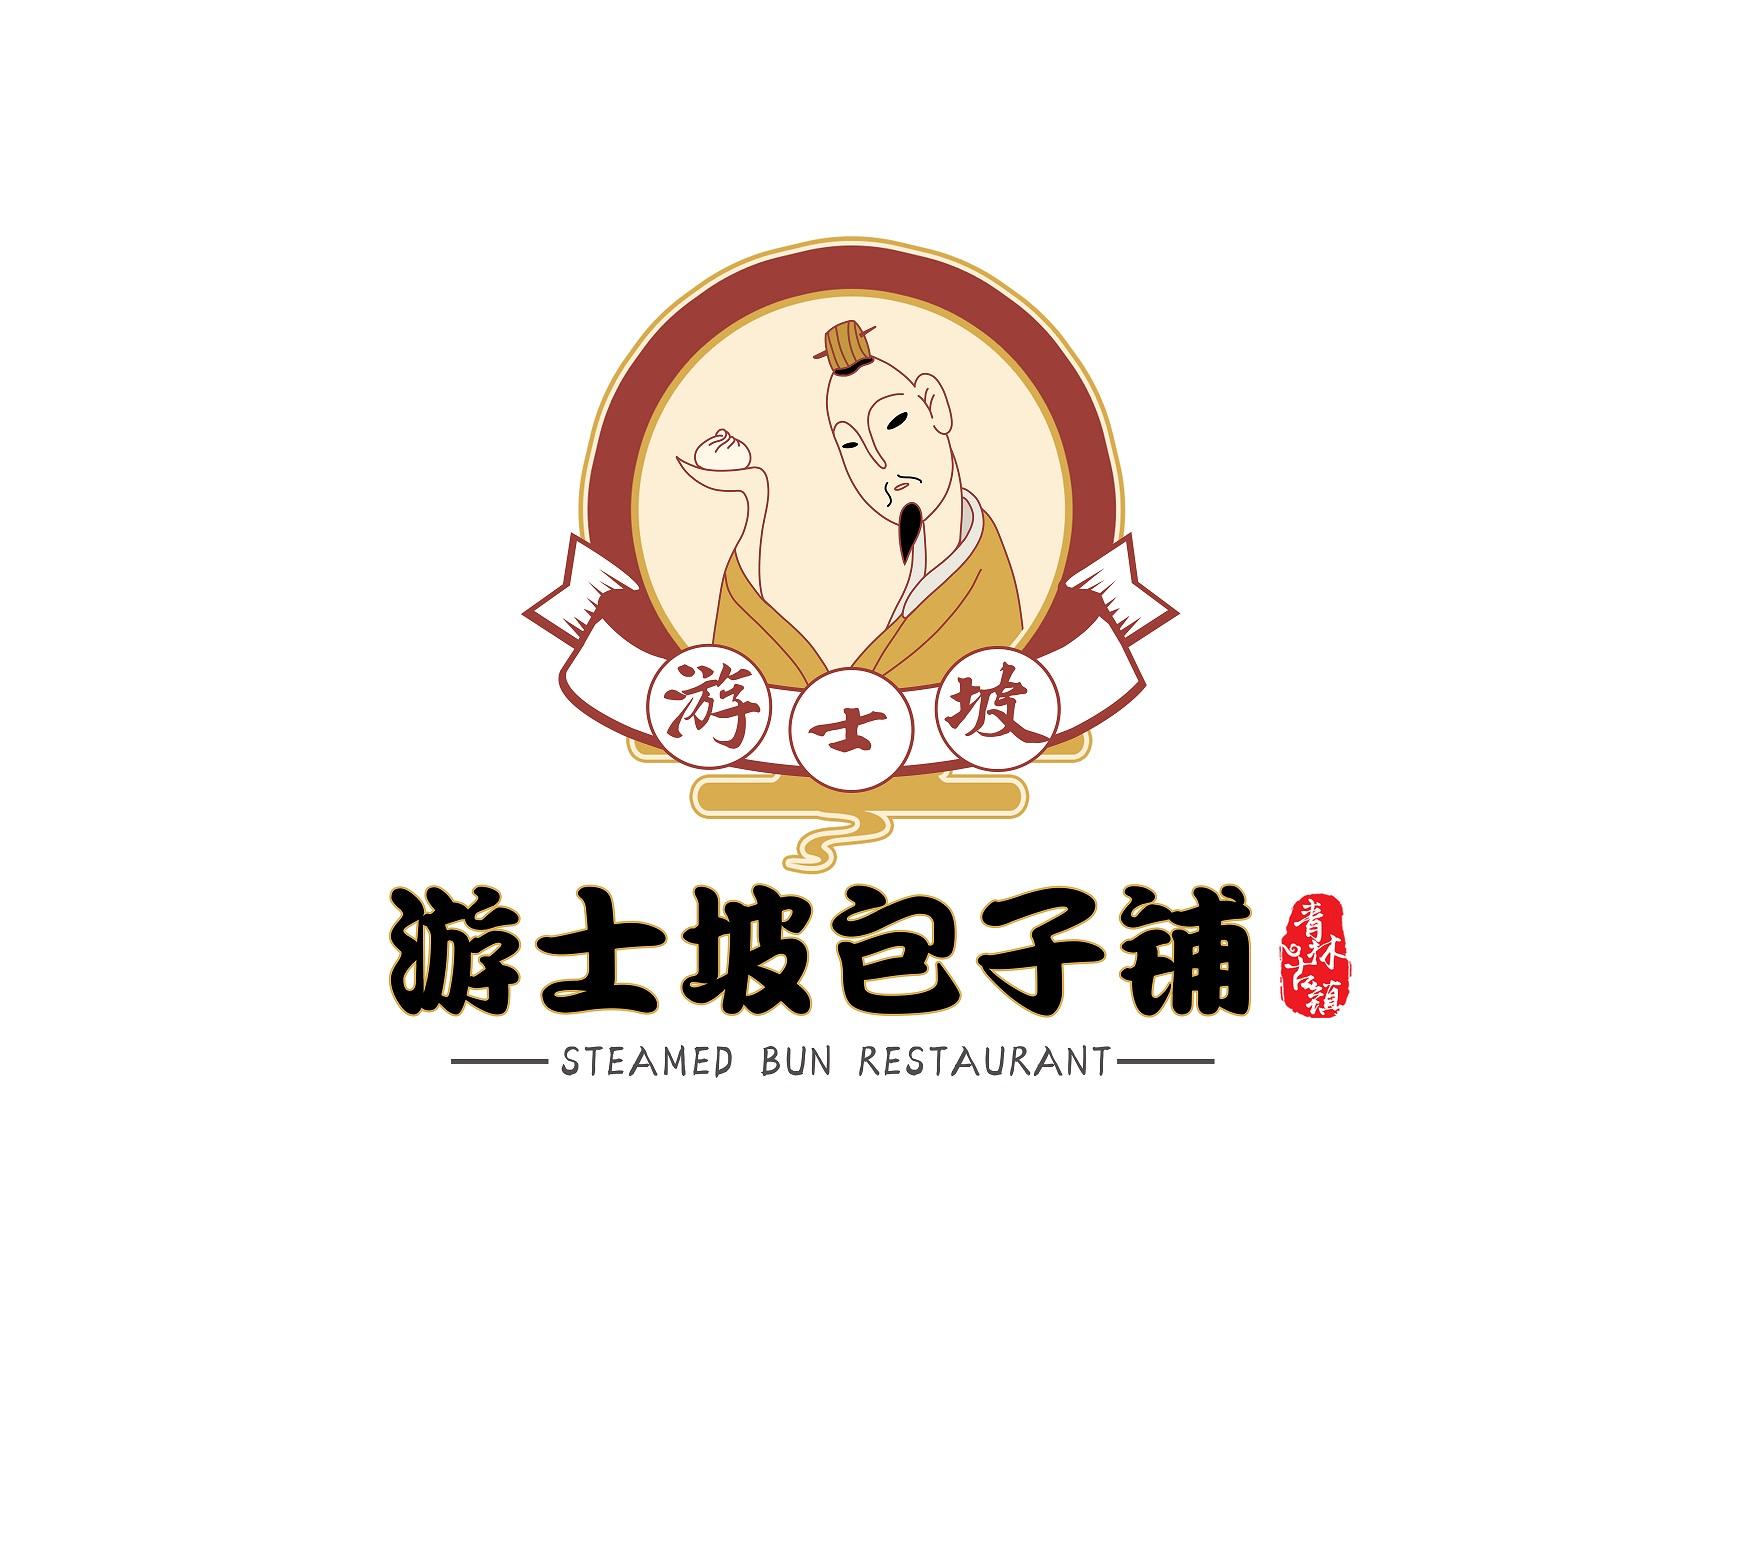 游士坡 游士坡包子铺 青林古镇 steamed bun restaurant商标公告